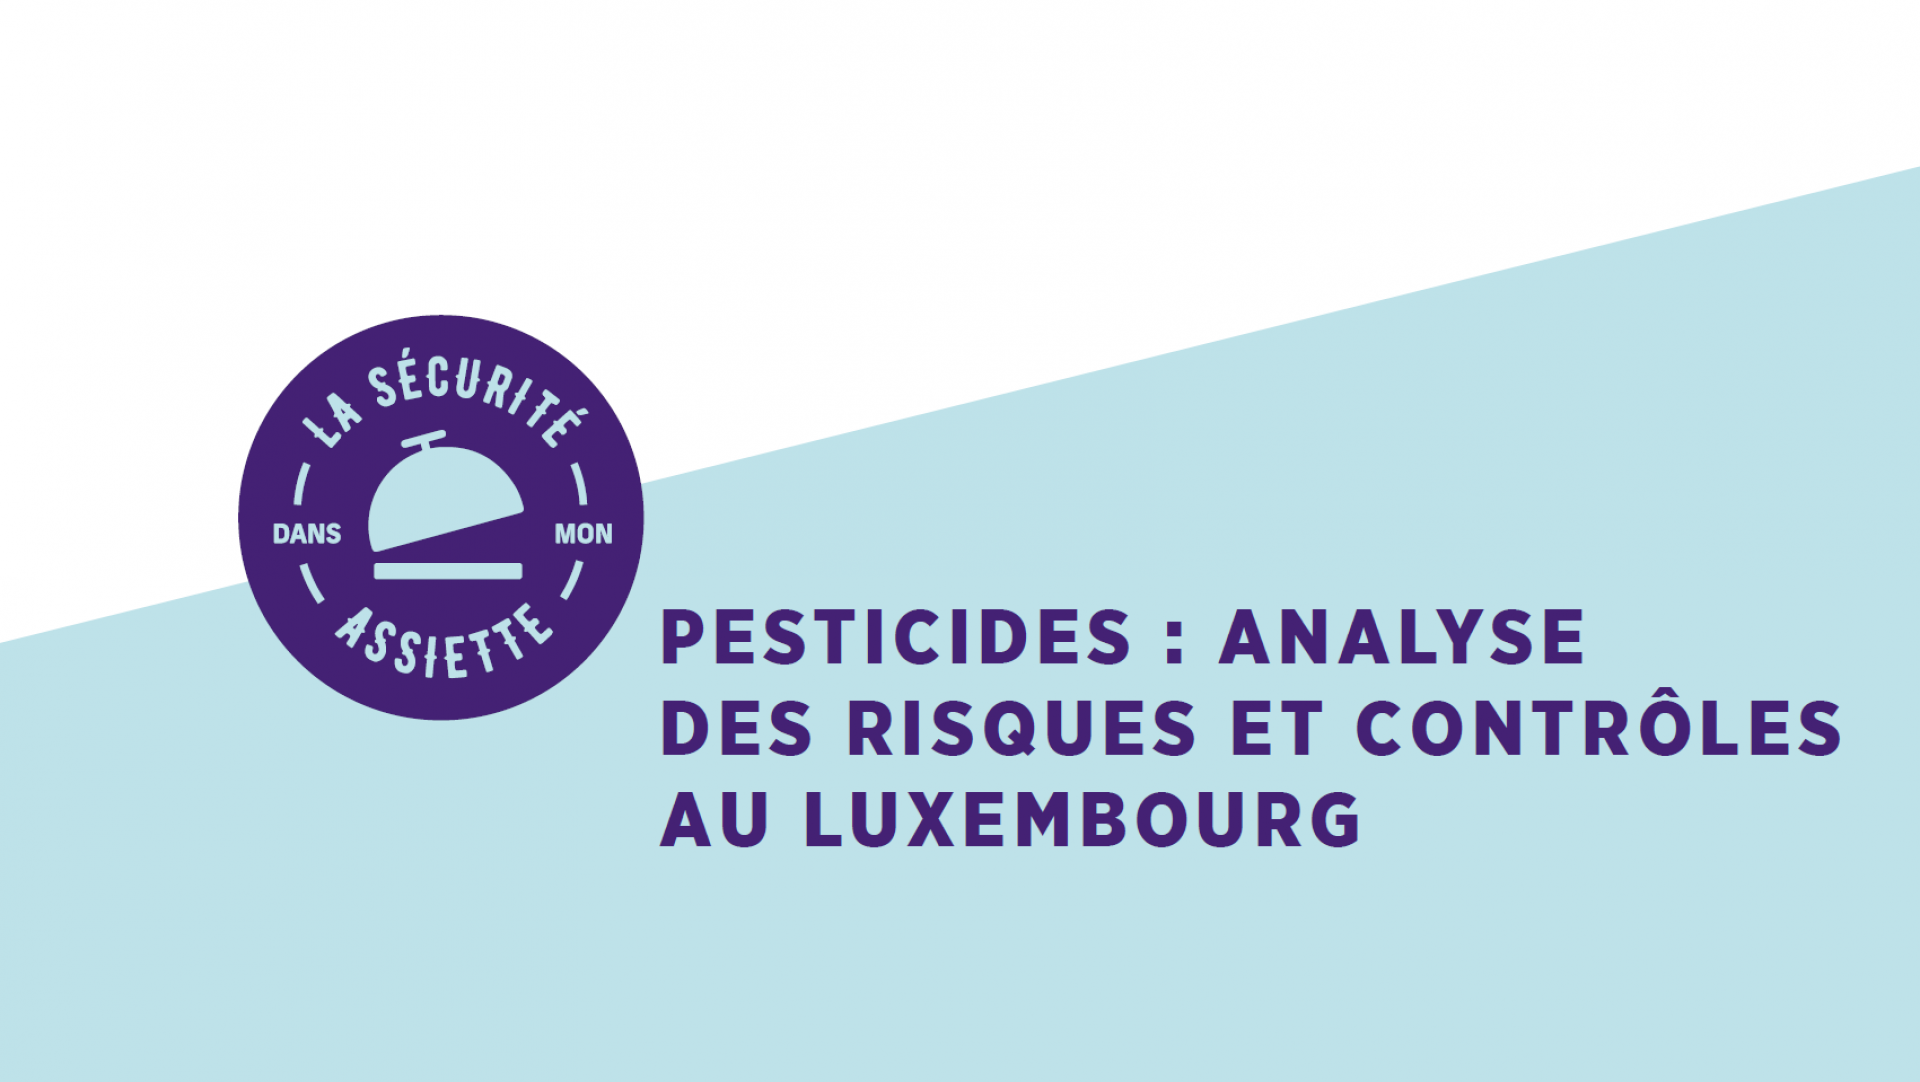 Pesticides: Analyse des risques et contrôles (sous-titres DE)